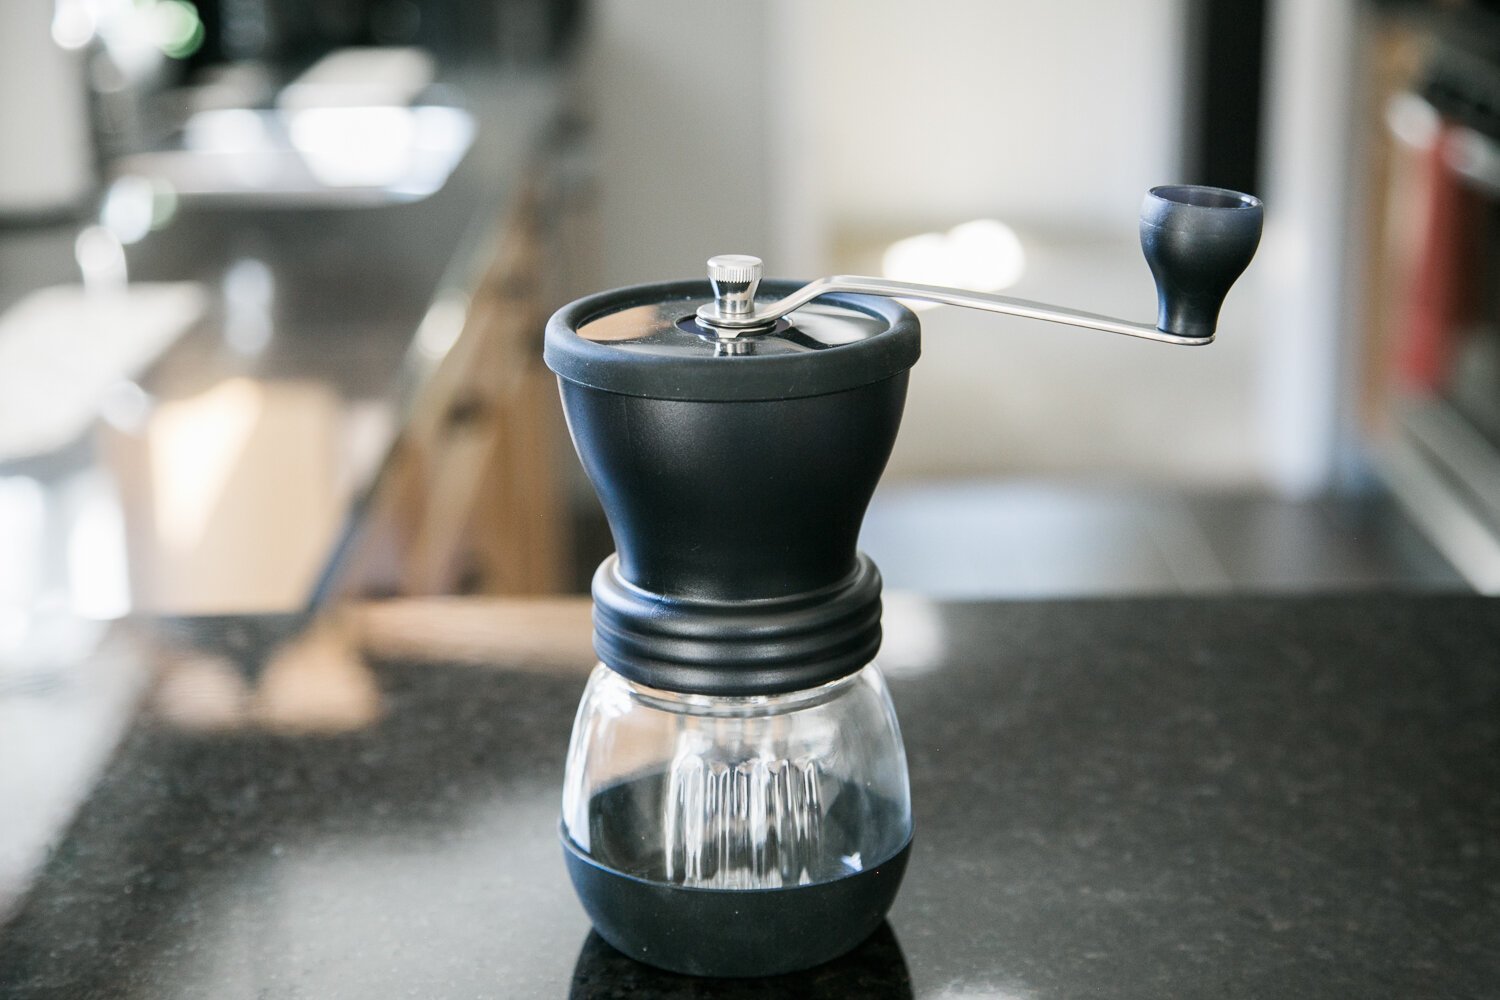 Hario Skerton manual coffee grinder